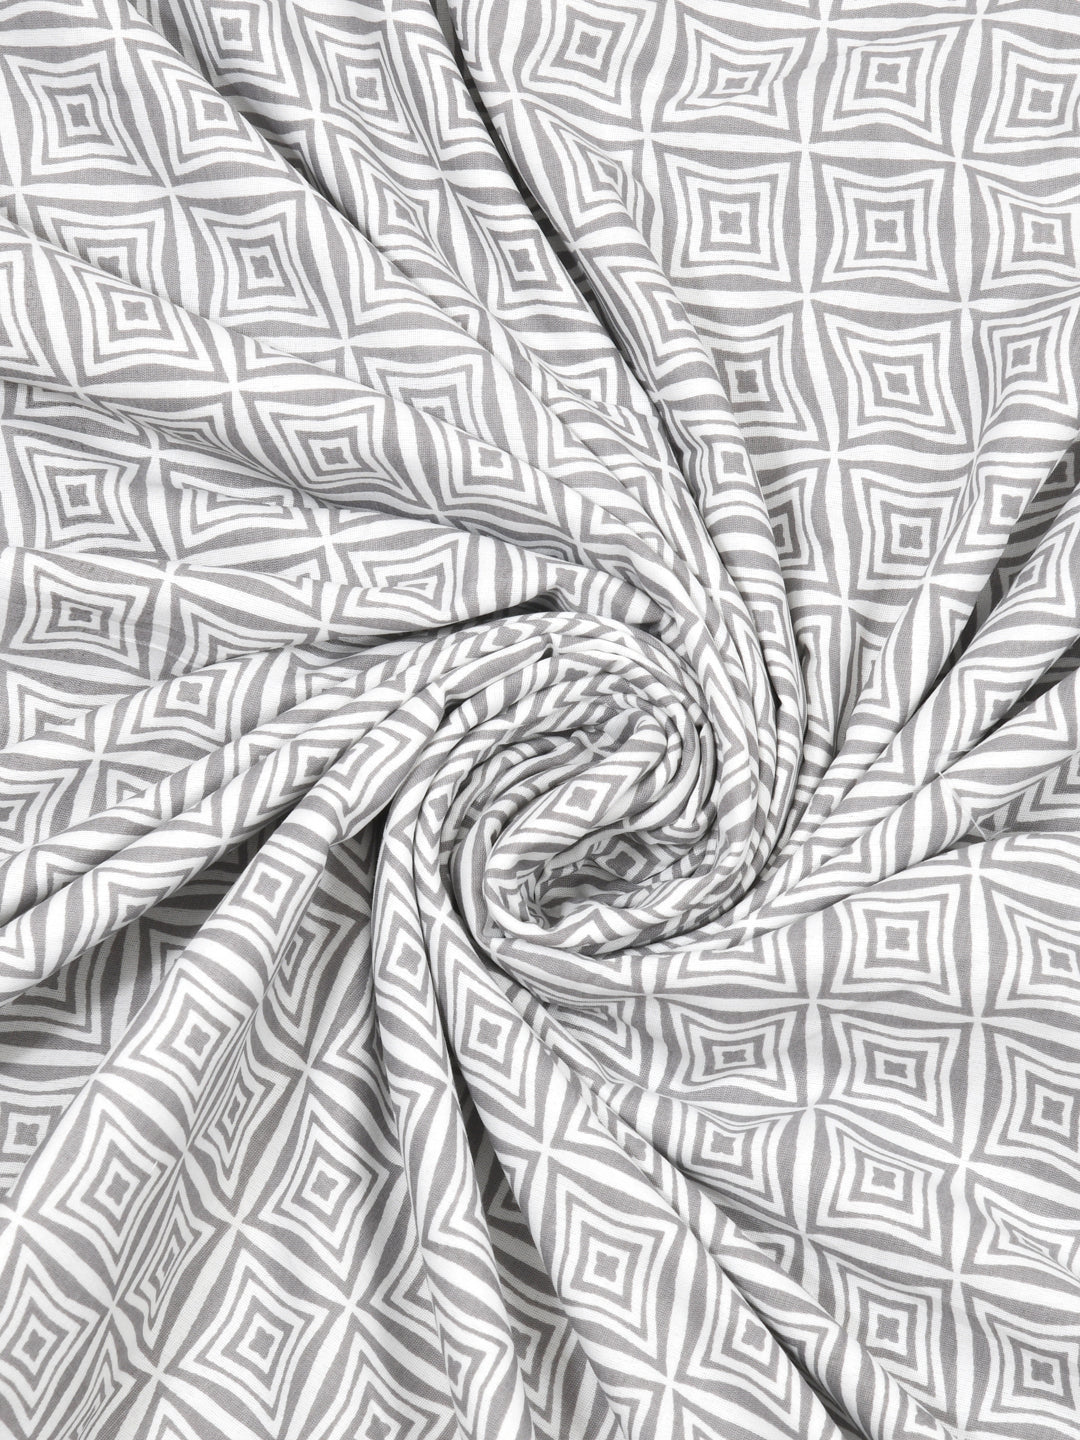 Single Bed Floral Print Reversible Dohar/AC Blanket